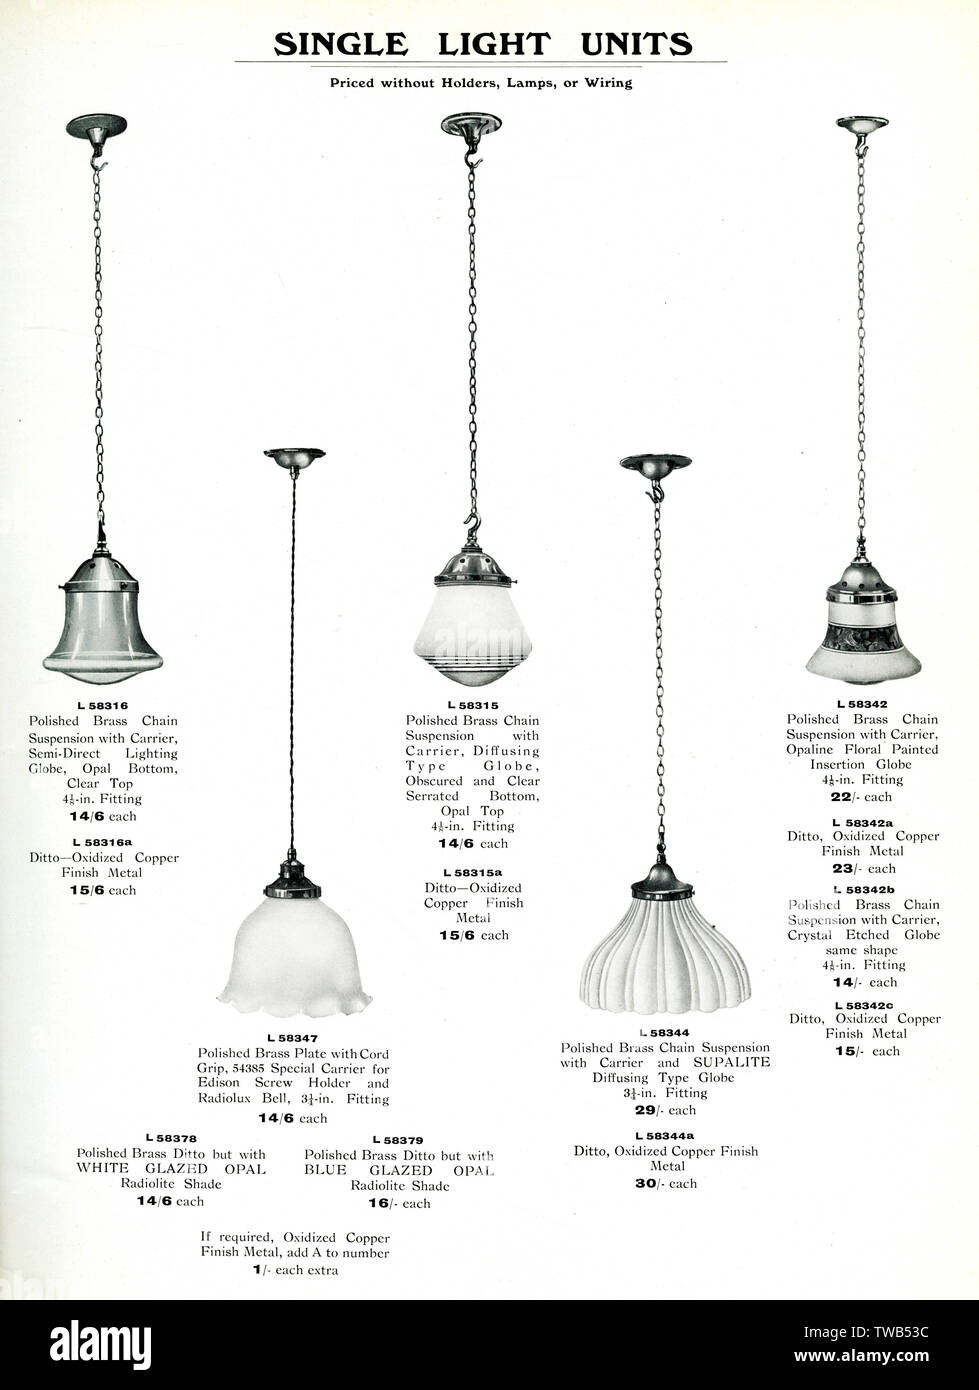 Catalogue des luminaires électriques, unités de lumière simples Banque D'Images